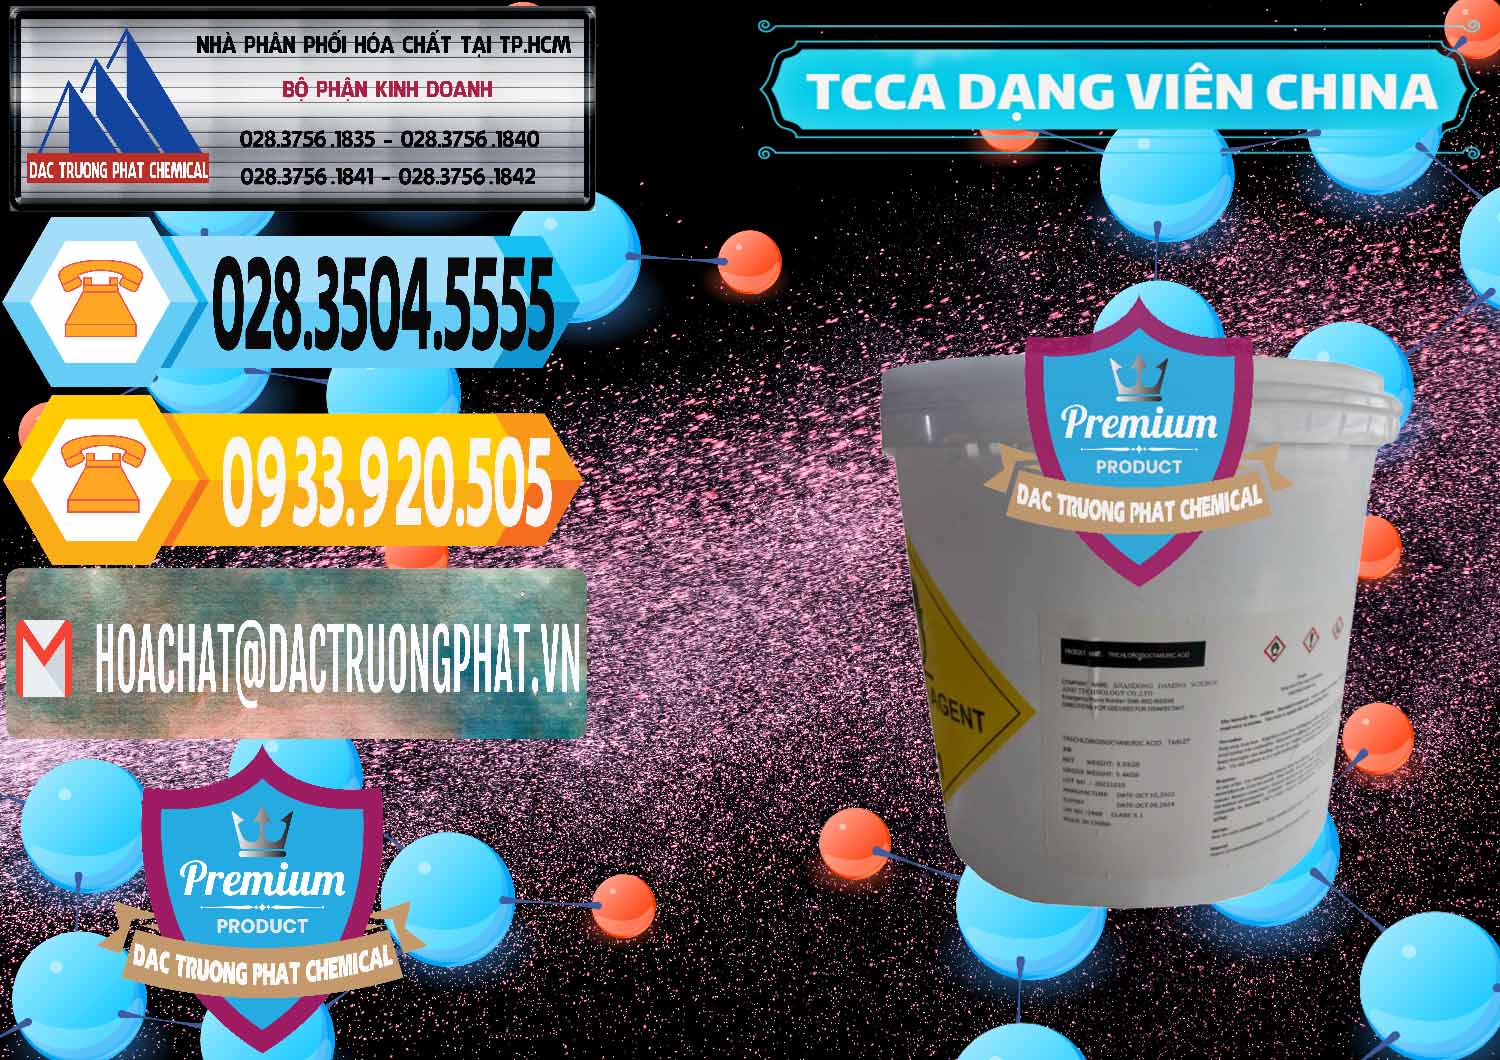 Nhà nhập khẩu - bán TCCA - Acid Trichloroisocyanuric Dạng Viên Thùng 5kg Trung Quốc China - 0379 - Nhà nhập khẩu & phân phối hóa chất tại TP.HCM - hoachattayrua.net